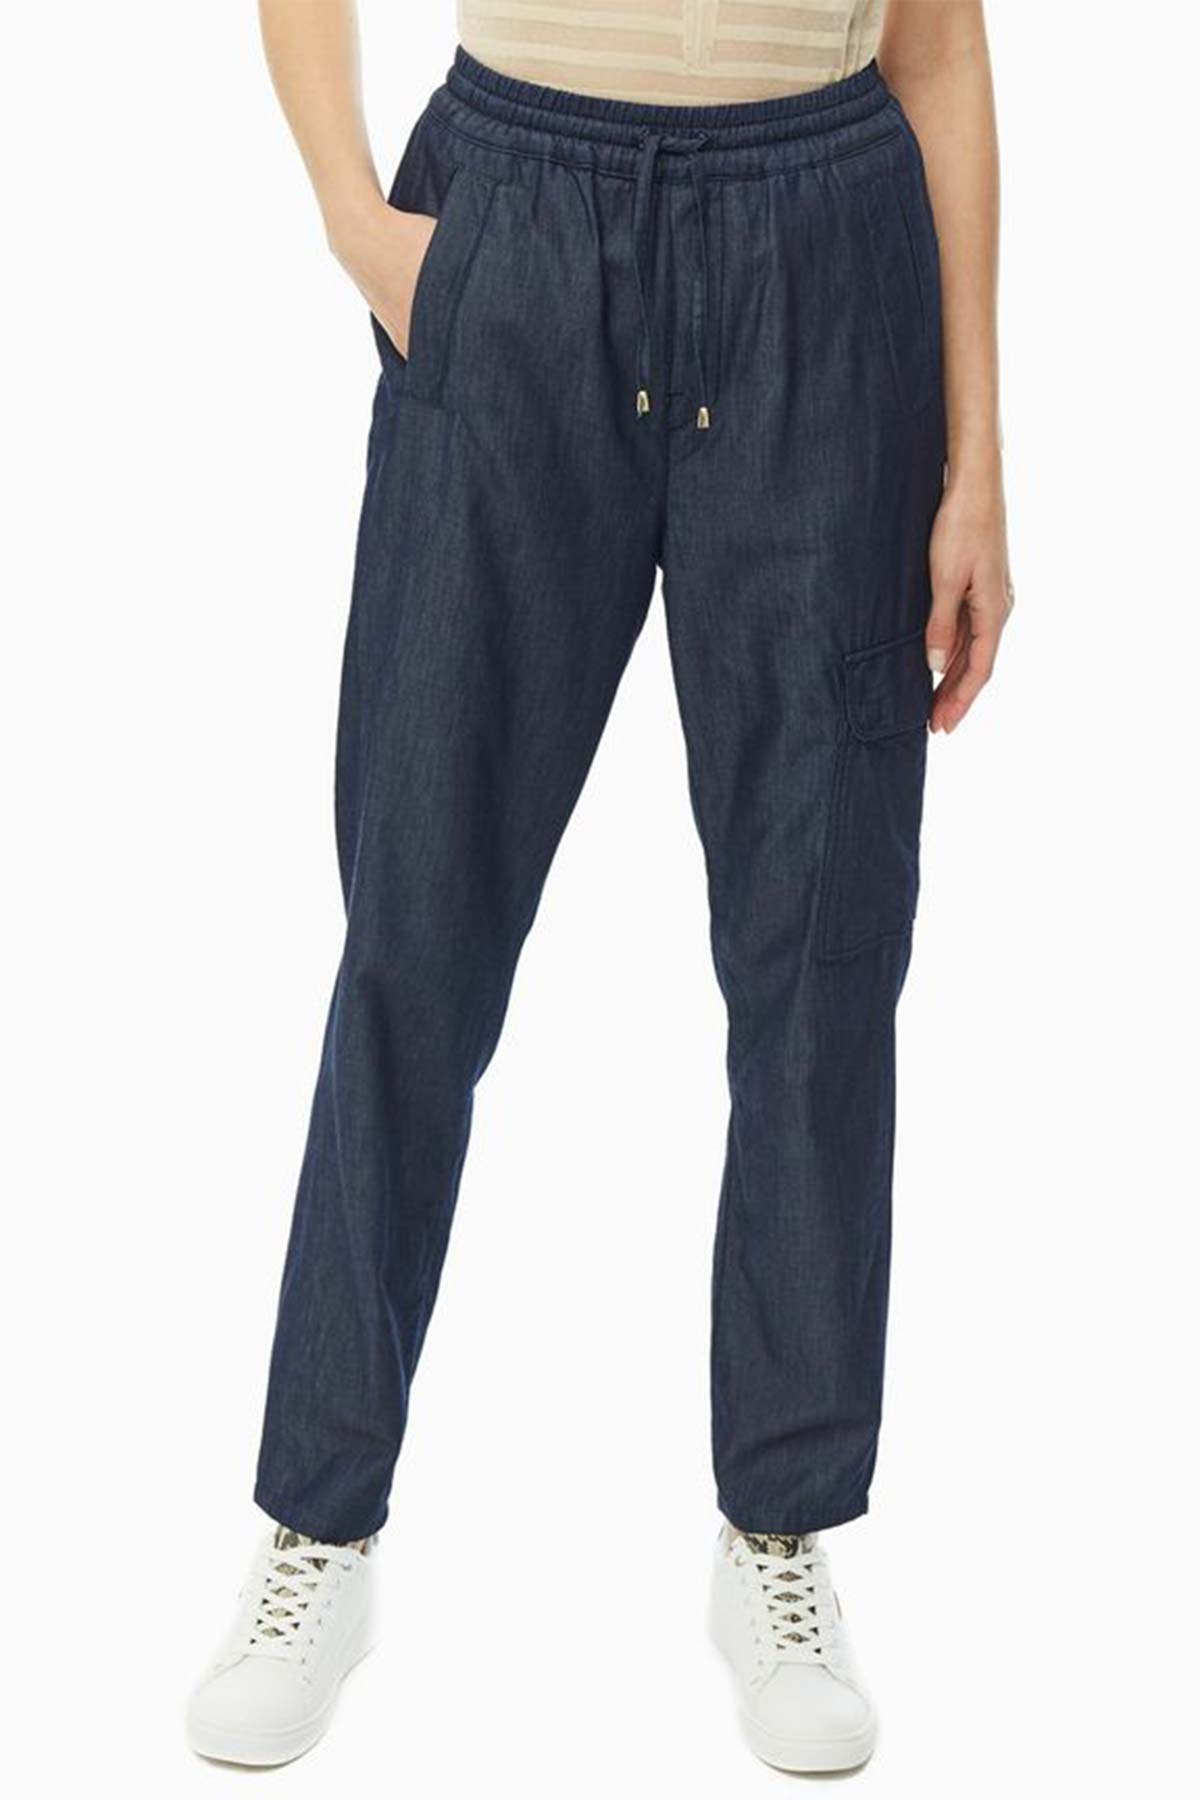 Trussardi Jeans Pantolon-Libas Trendy Fashion Store